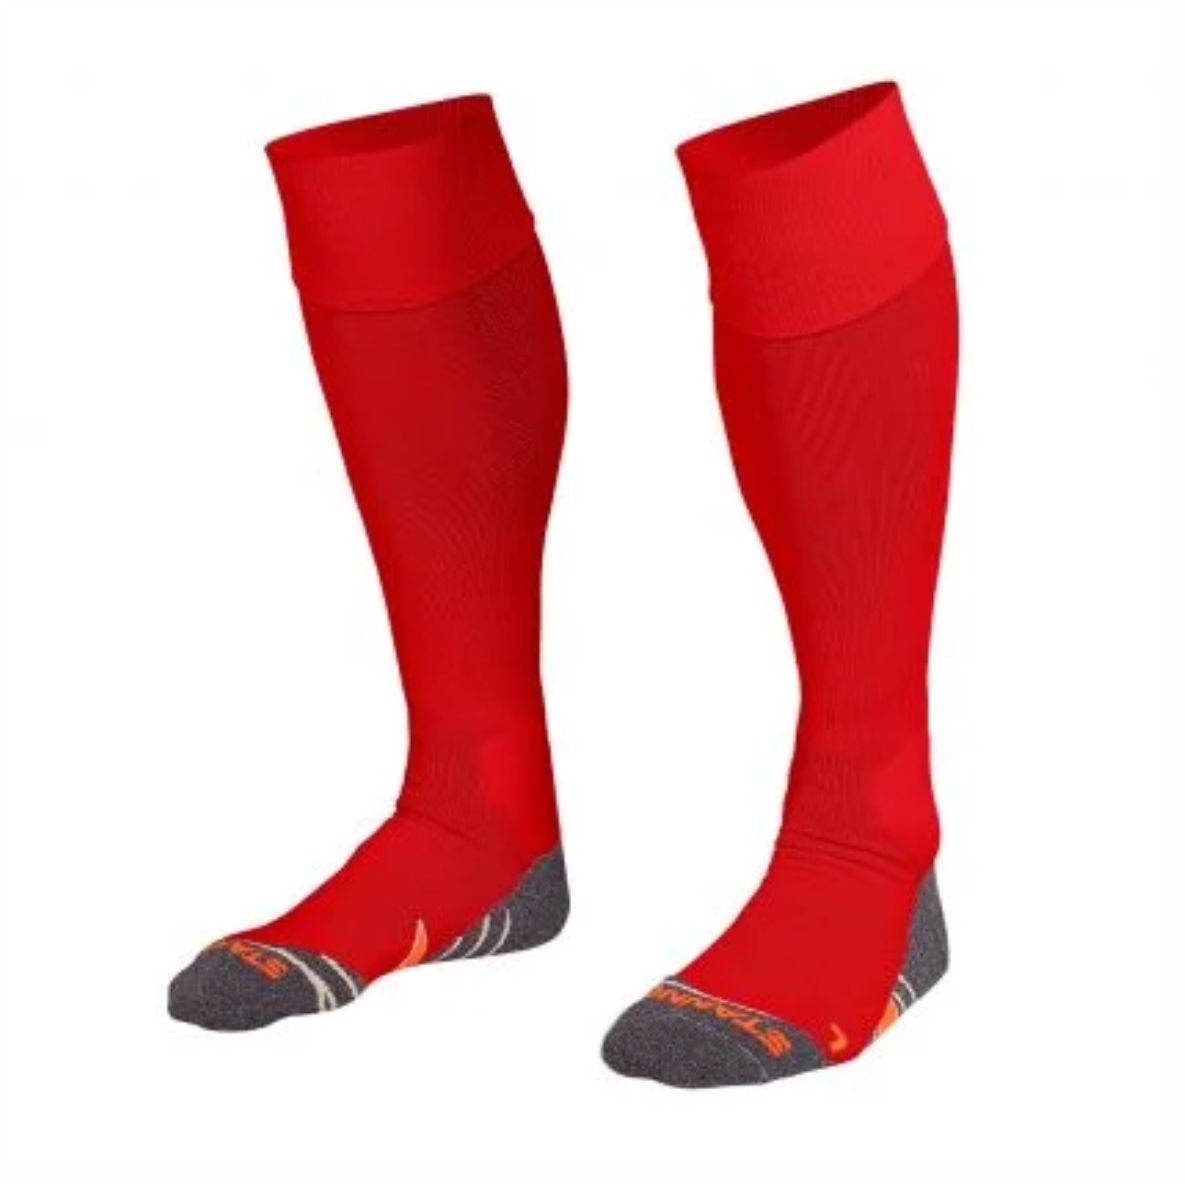 Stanno - Uni II Socks - Red - Adult